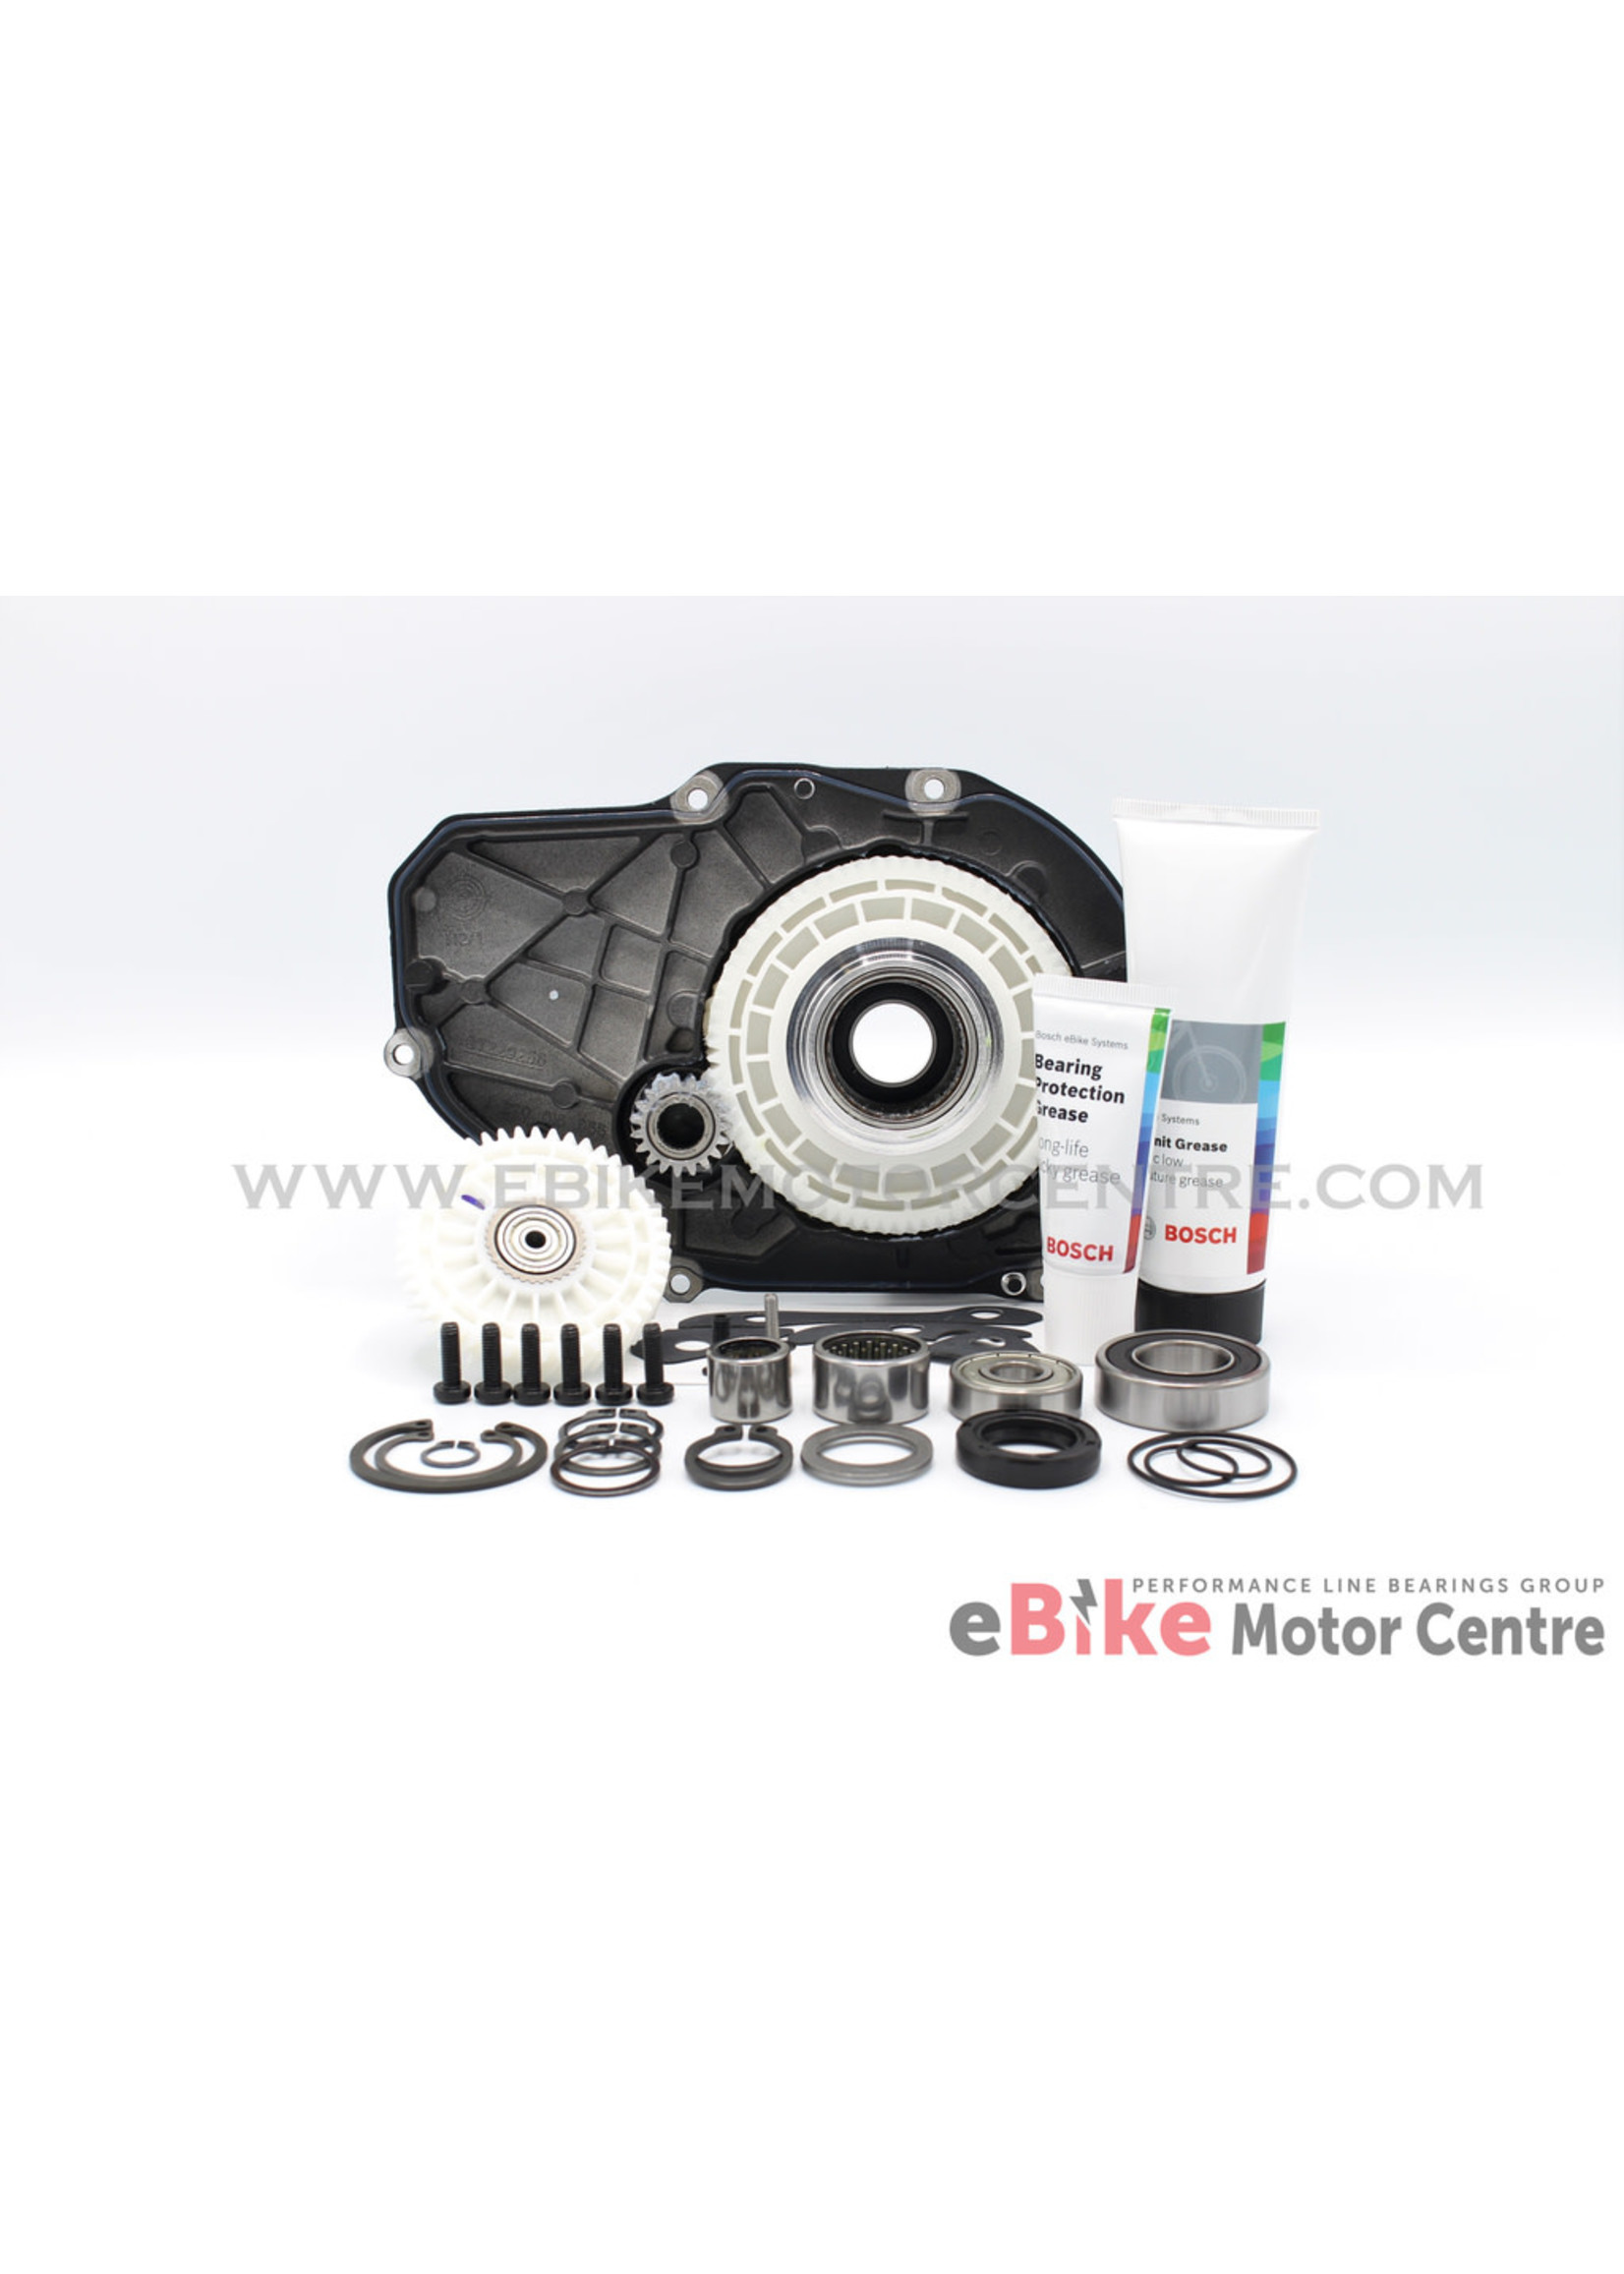 Bosch Bosch Gen 2 - Bosch motor service repair kit +